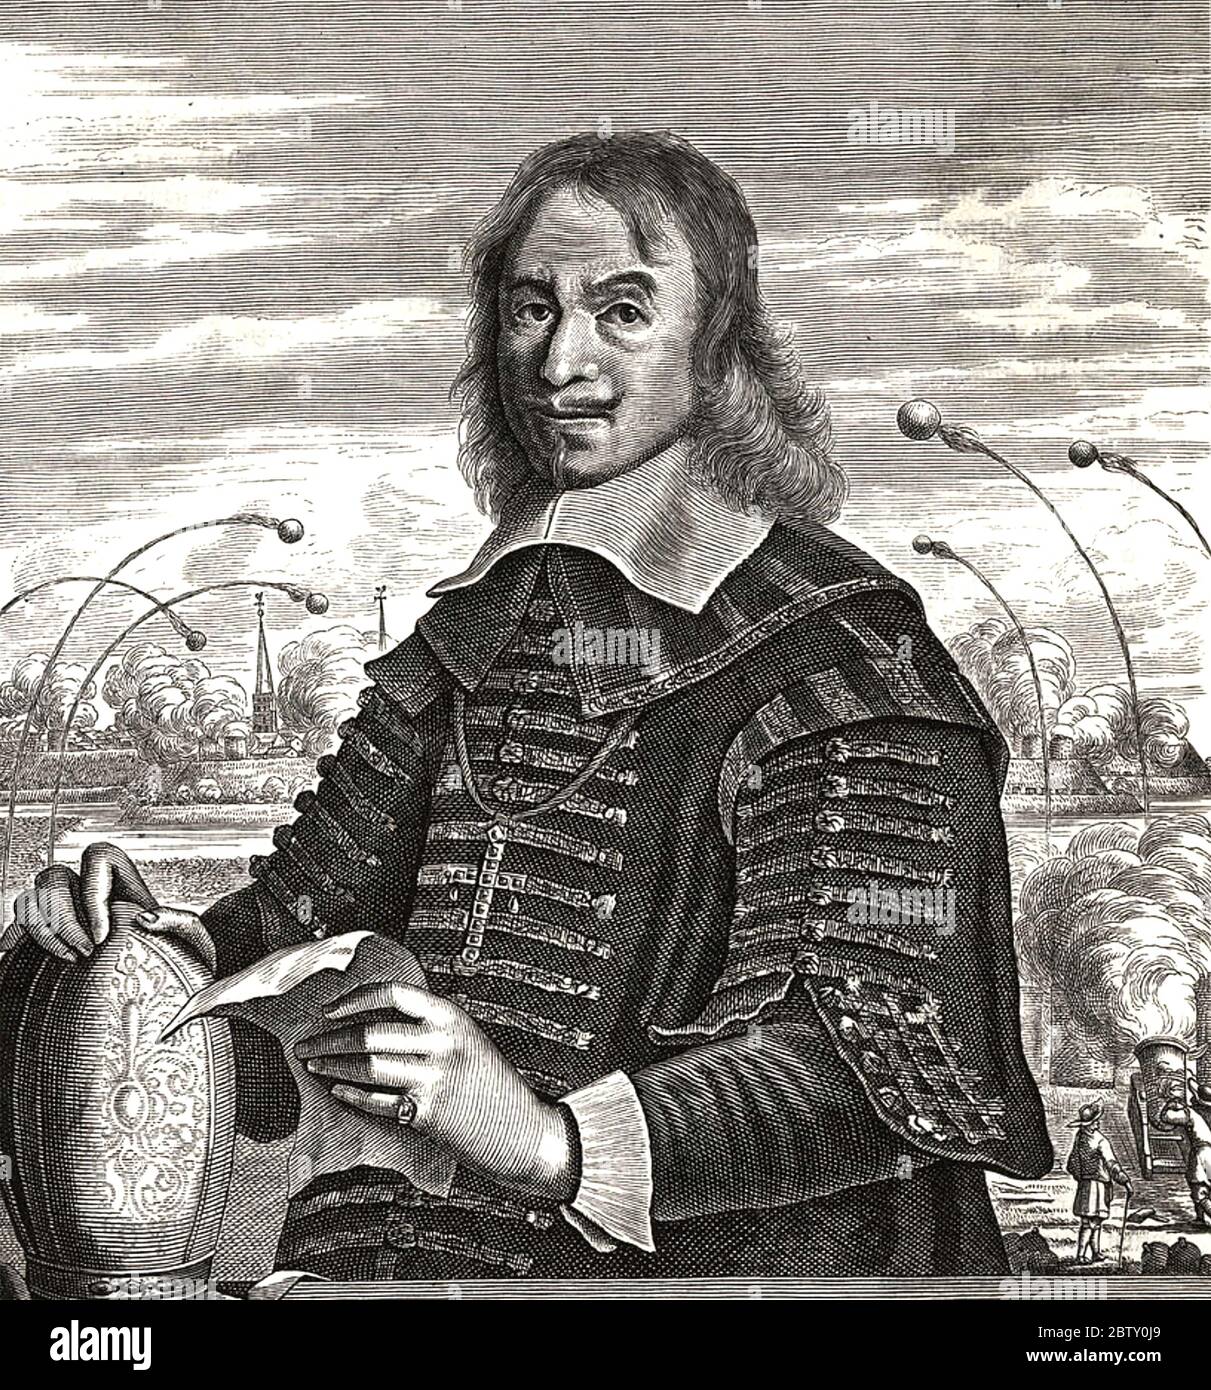 CHRISTOPH BERNHARD von GALEN (1606-1678) È un principe-vescovo e capo militare del Sacro Romano Impero Foto Stock